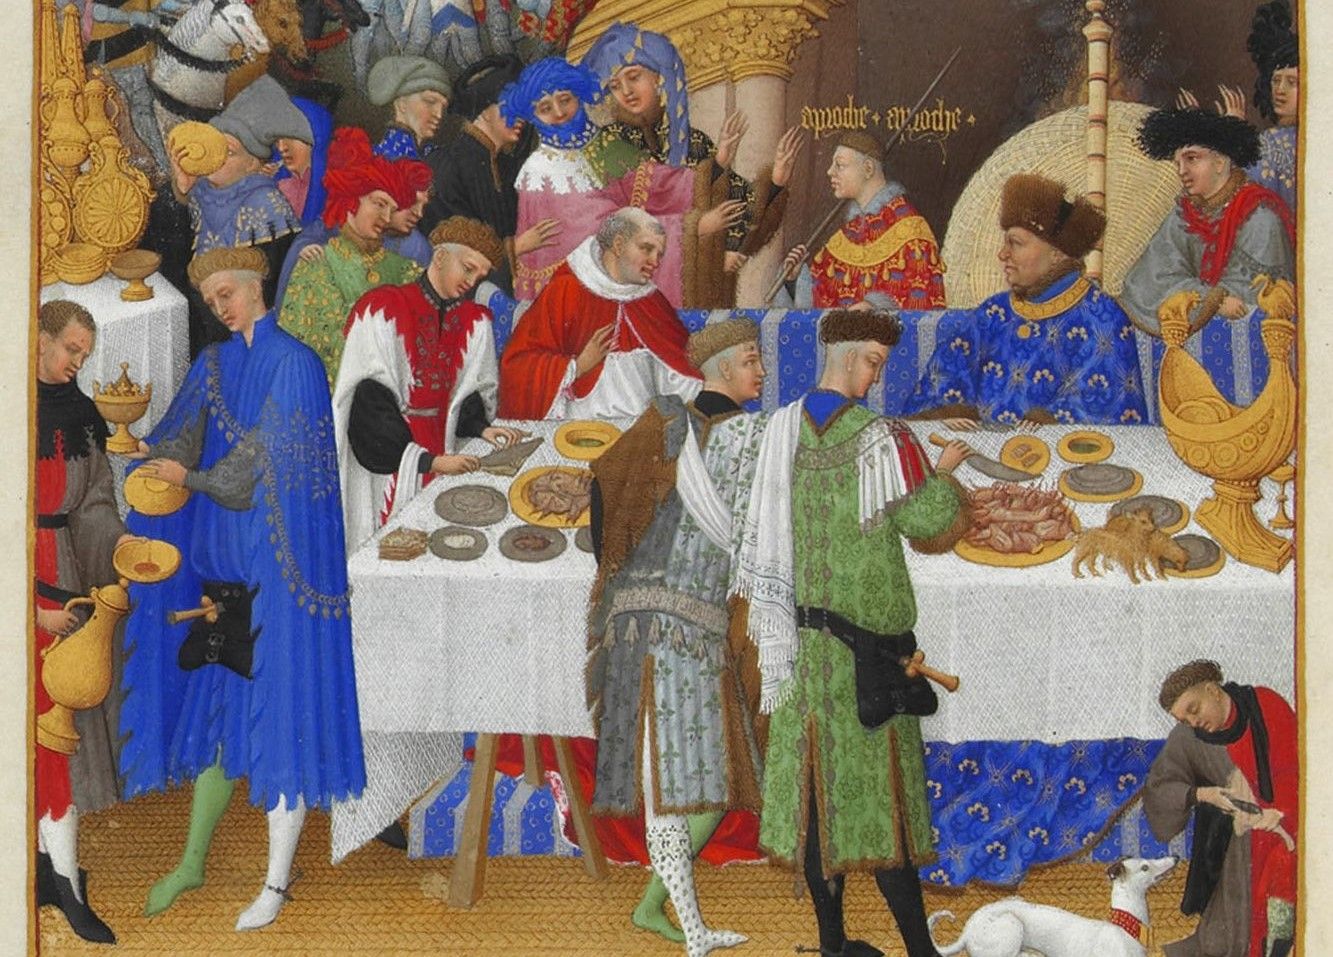 Imagen del libto Las muy ricas horas del Duque de Berry escrito en latín hacia 1410